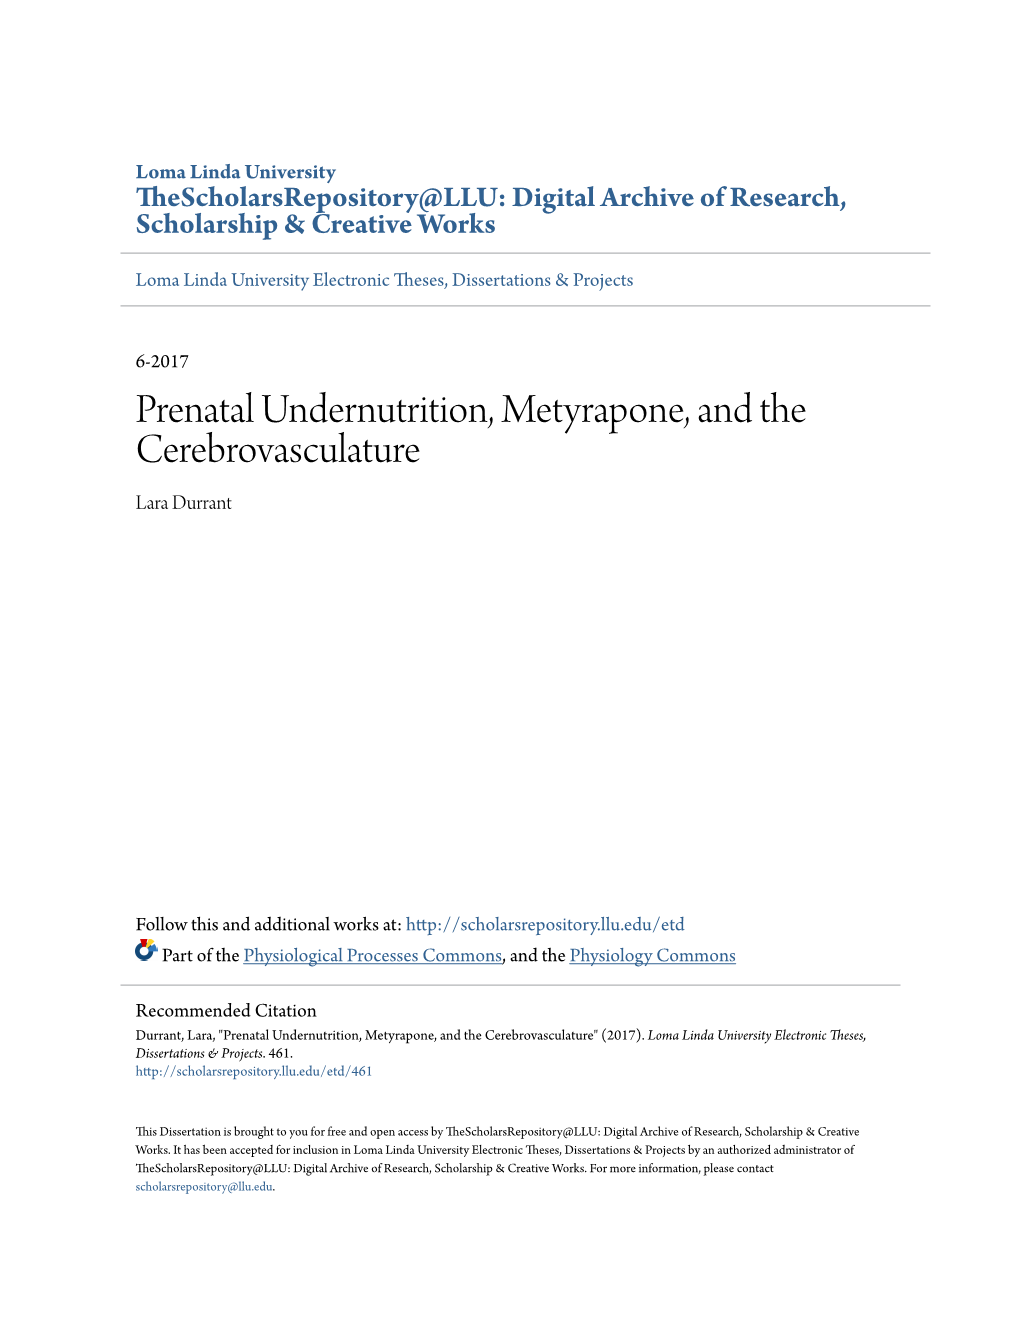 Prenatal Undernutrition, Metyrapone, and the Cerebrovasculature Lara Durrant